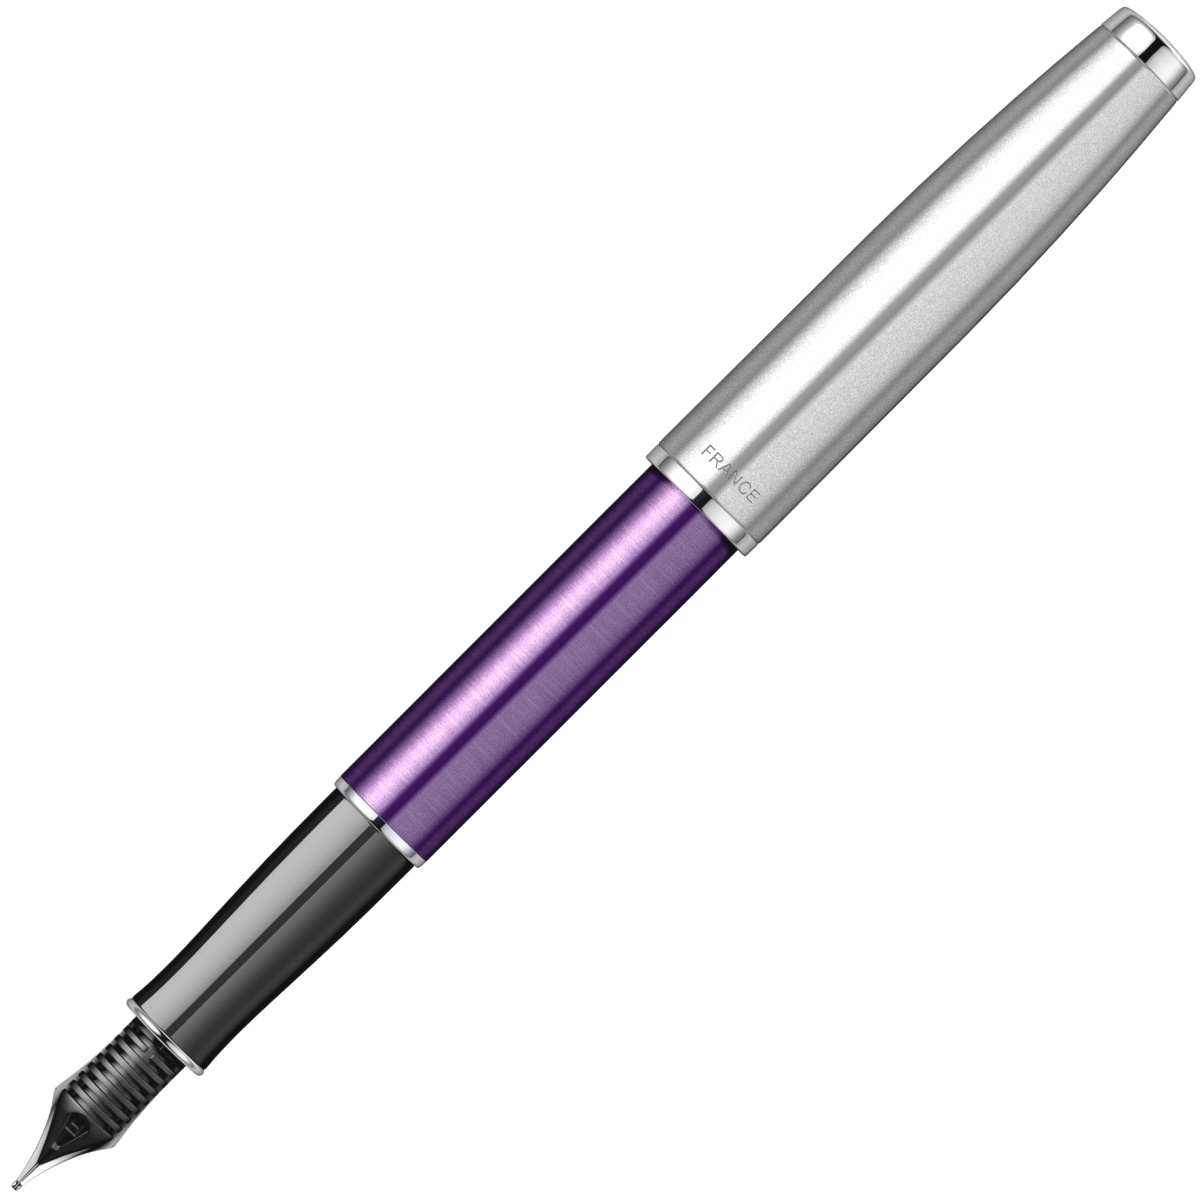  Ручка перьевая Parker Sonnet Essential SB F545, Violet CT (Перо F), фото 3